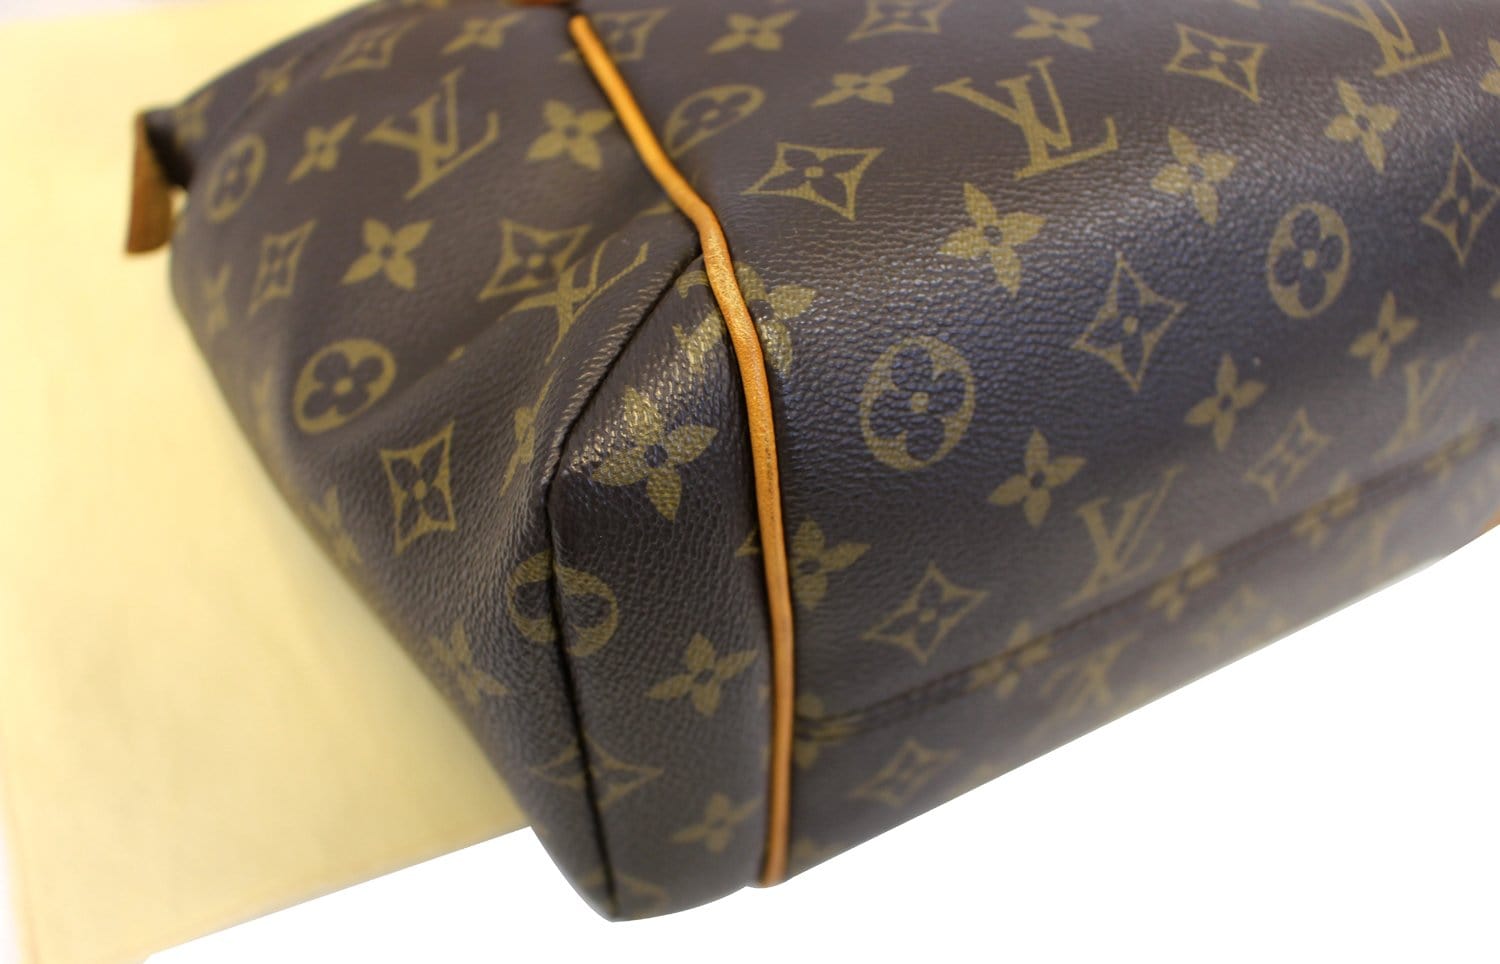 Louis Vuitton M55210 Monogram Griet Shoulder Tote Bag Used